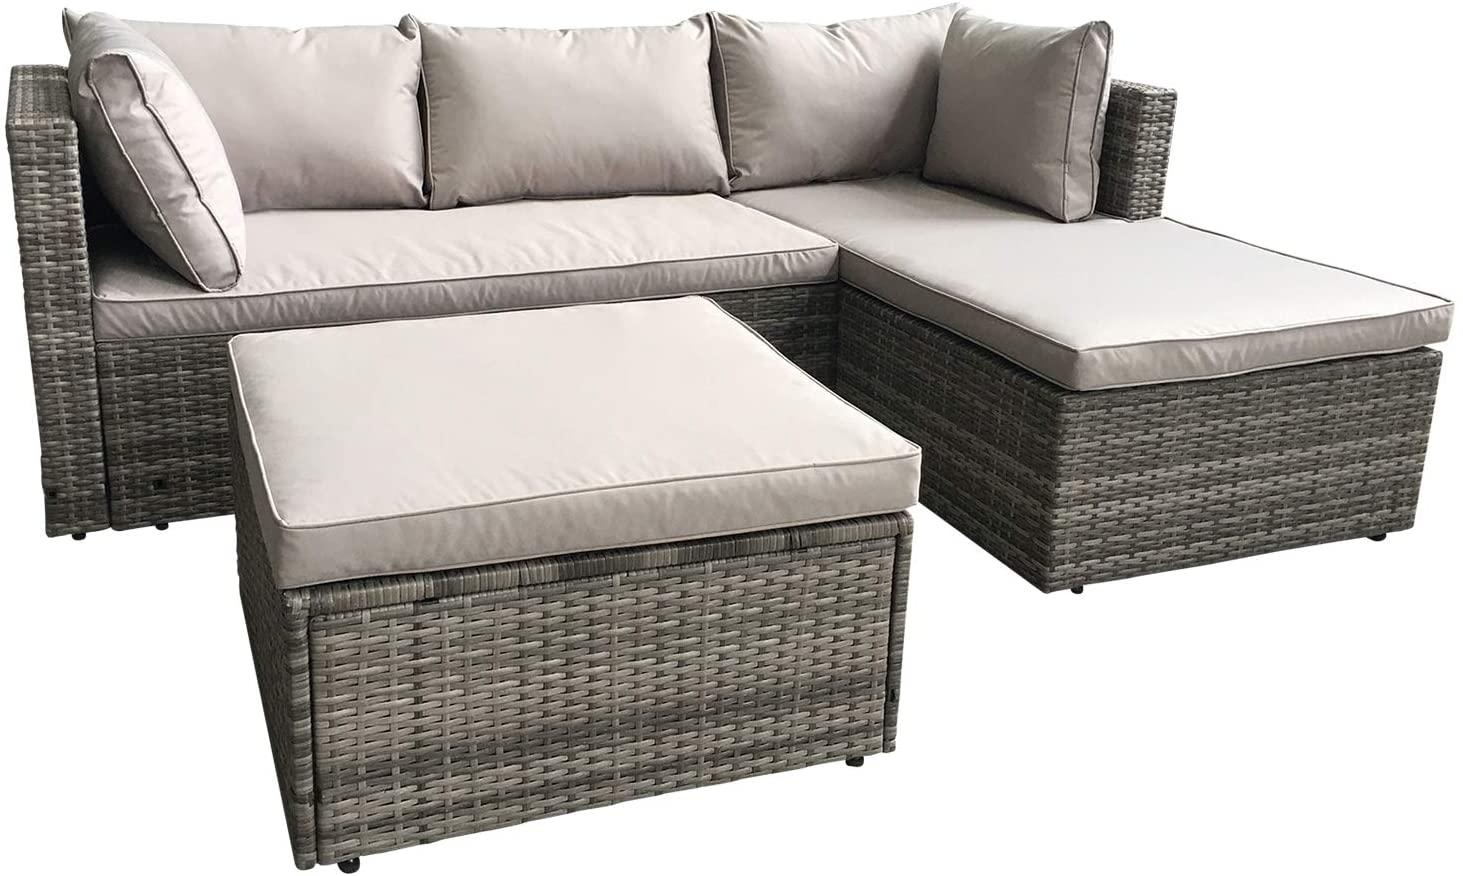 AmazonBasics Outdoor Patio Garden 3-Piece Sofa Lounge Set for $349.88 Shipped